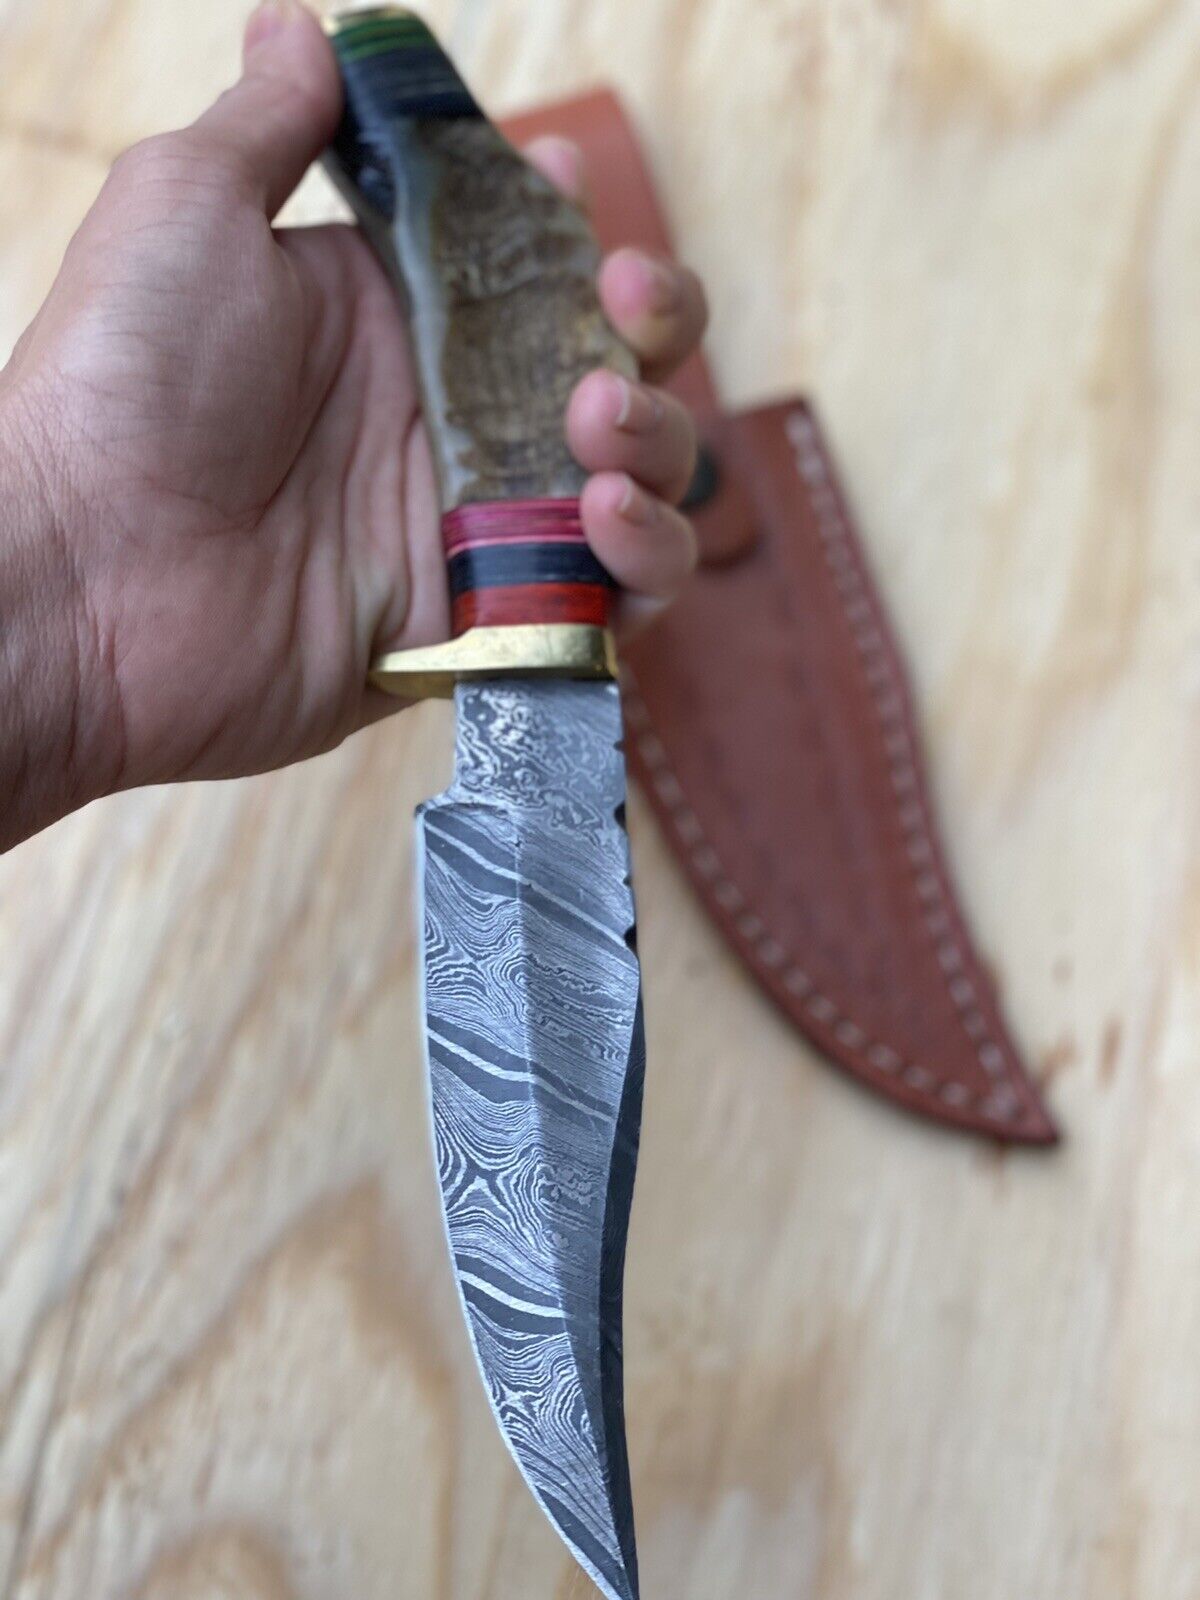 10”Custom Made Damascus Steel Blade w/Ram horn handle/Skinner/hunting Knife ZH07